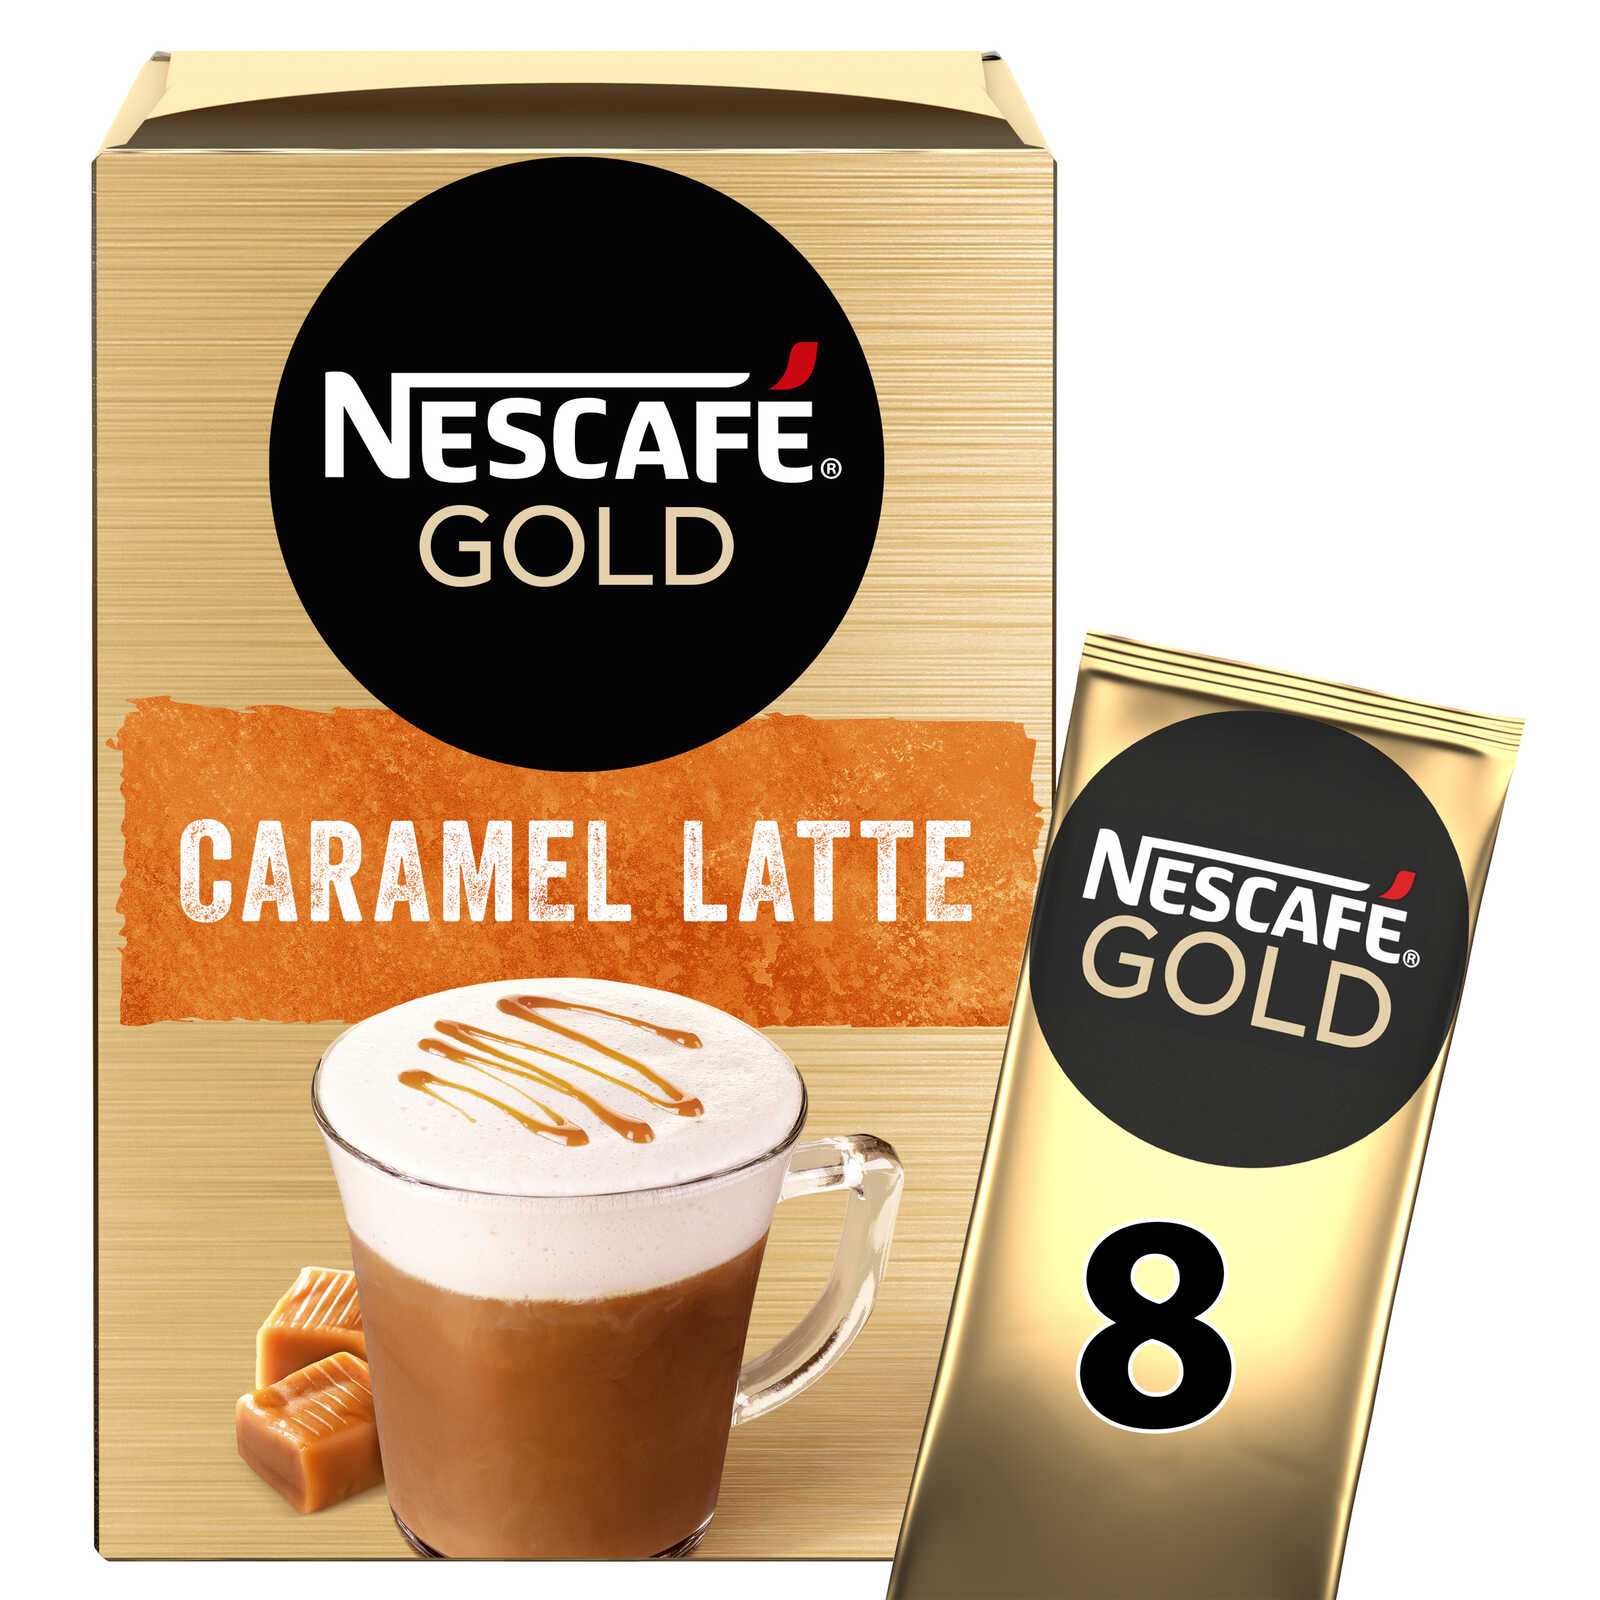 NESCAFE Nescafé cappuccino caramel stick 136g pas cher 